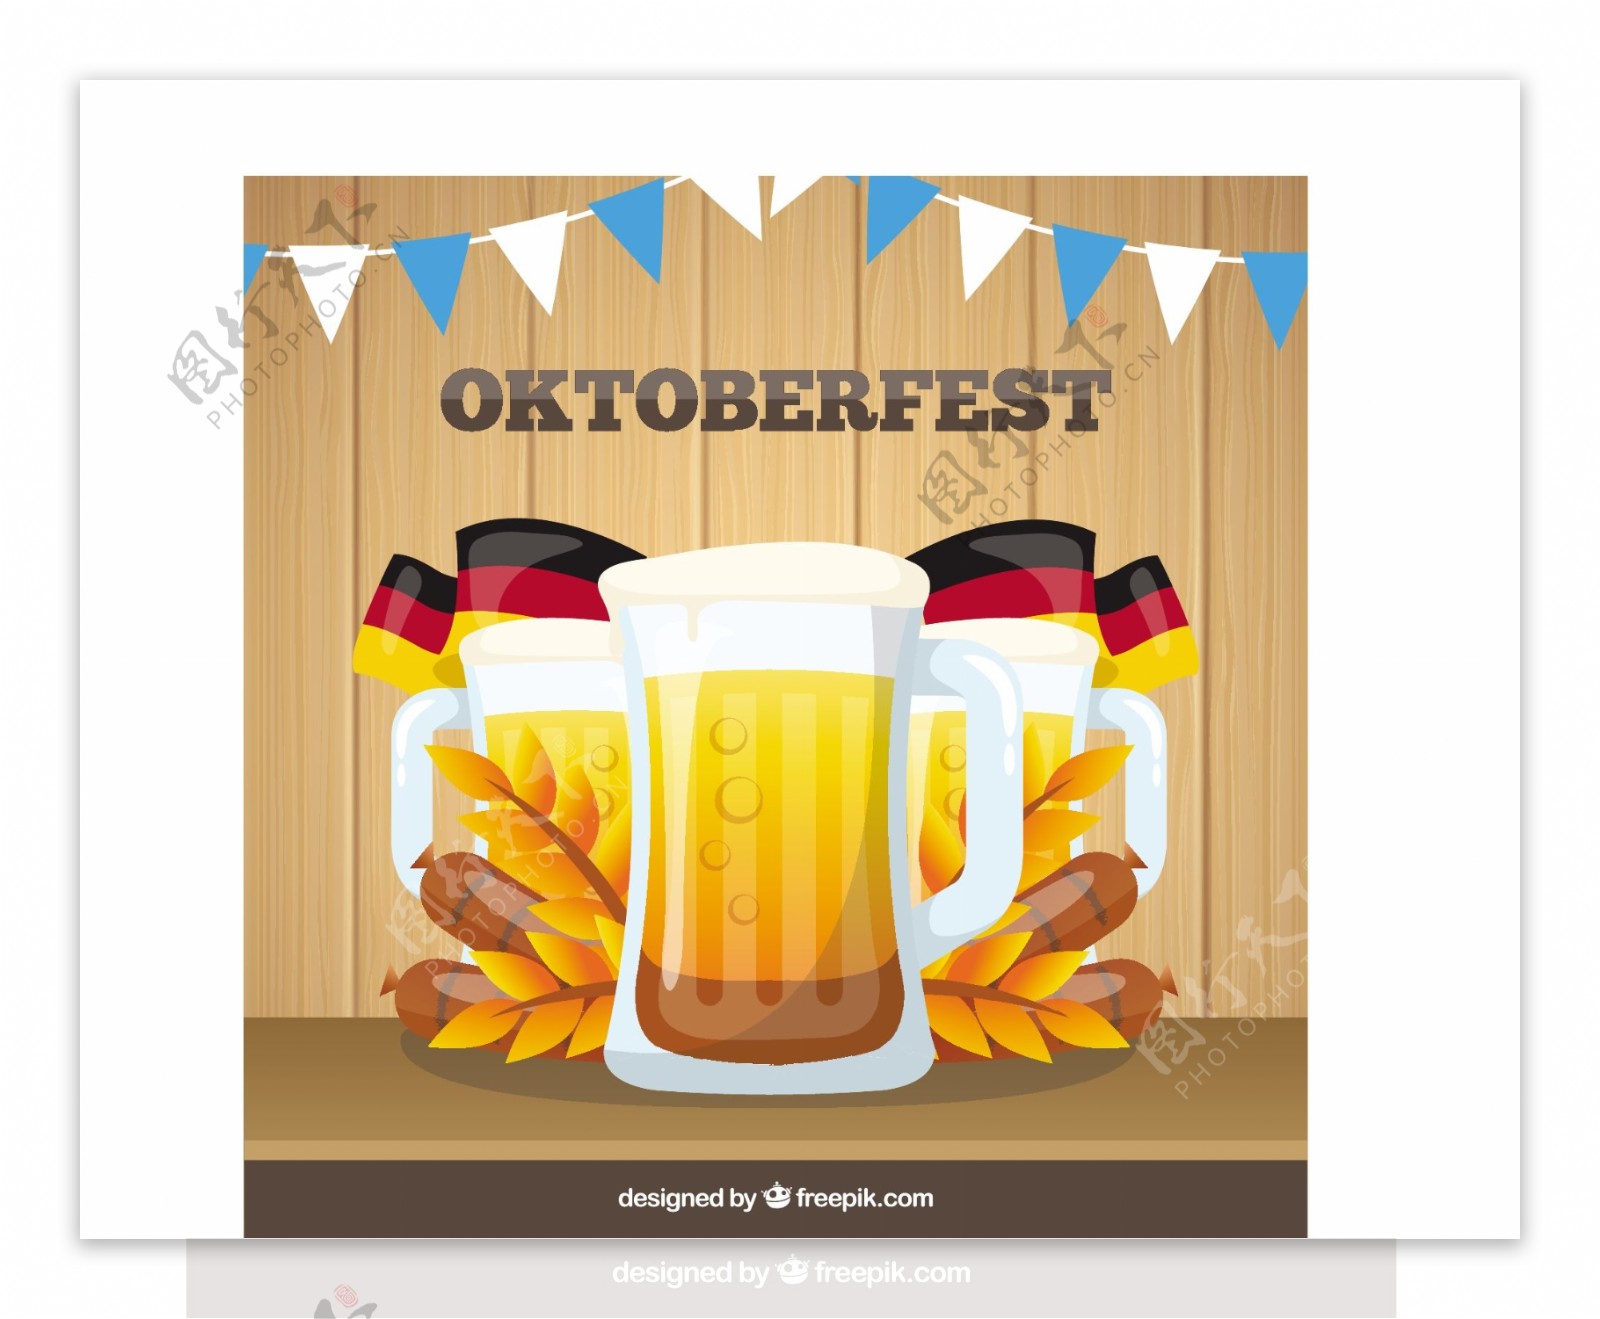 啤酒节啤酒与德国国旗的传单